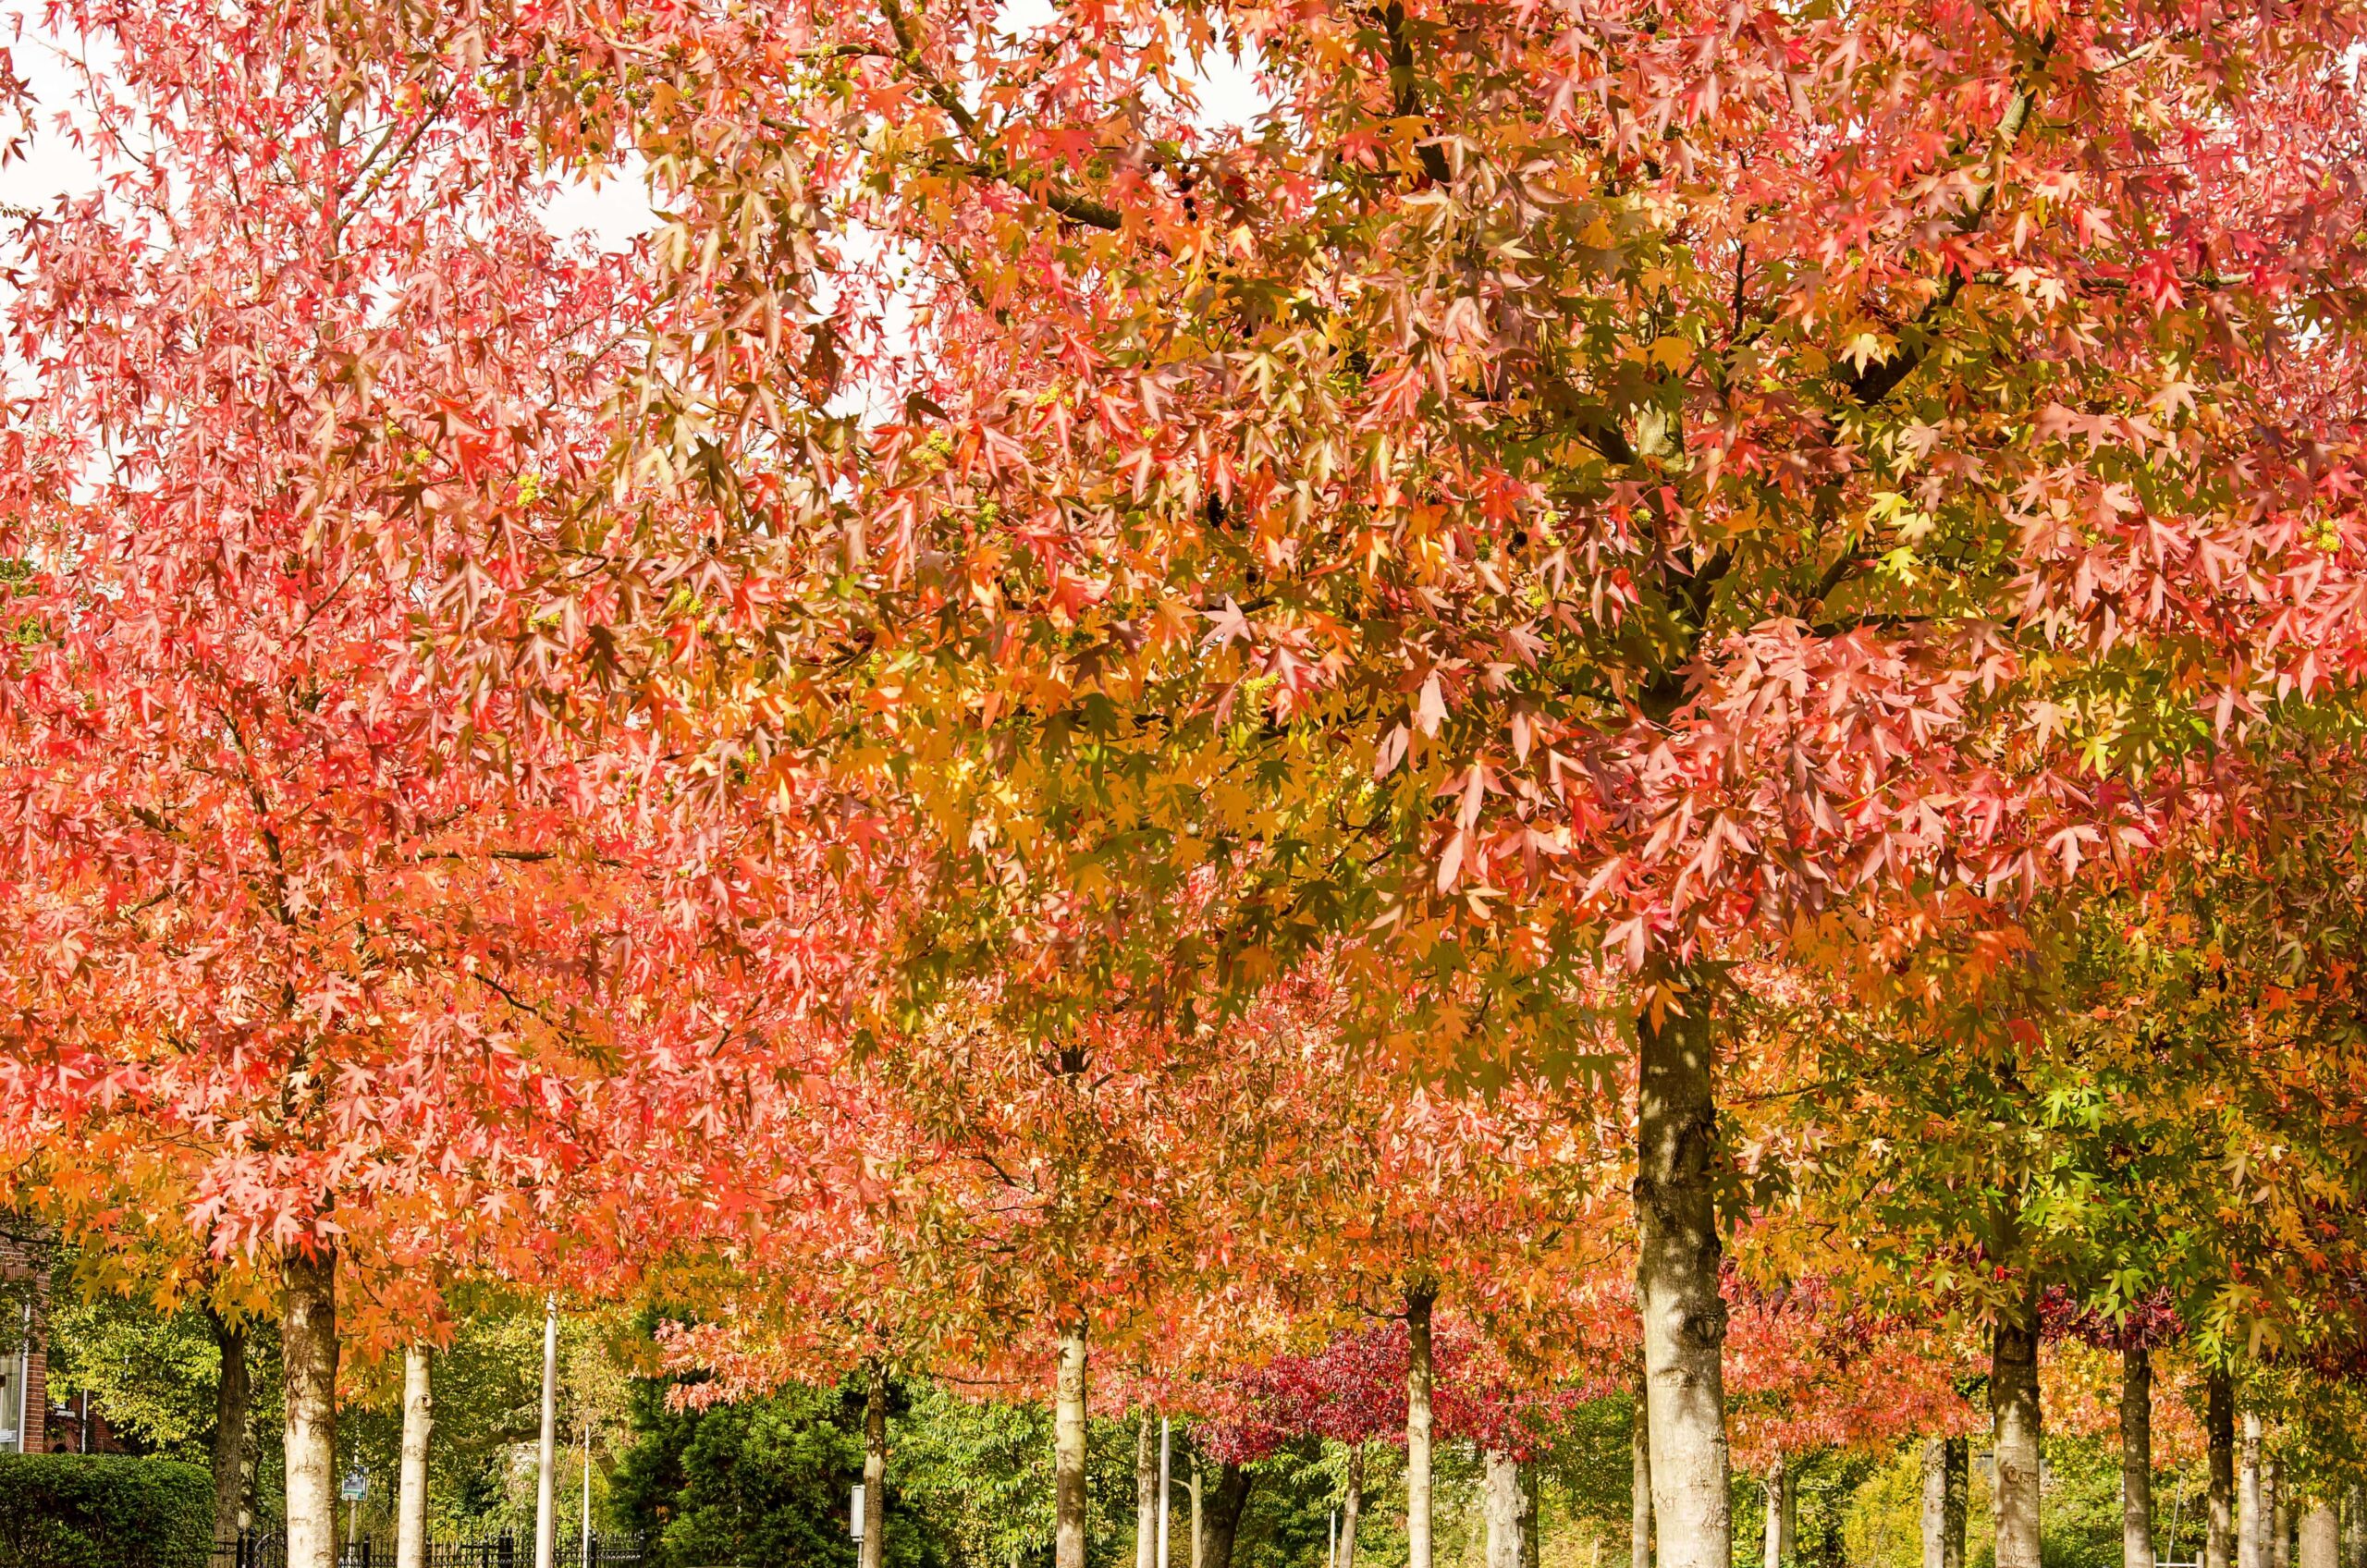 A field of Sweetgum trees in Georgia.